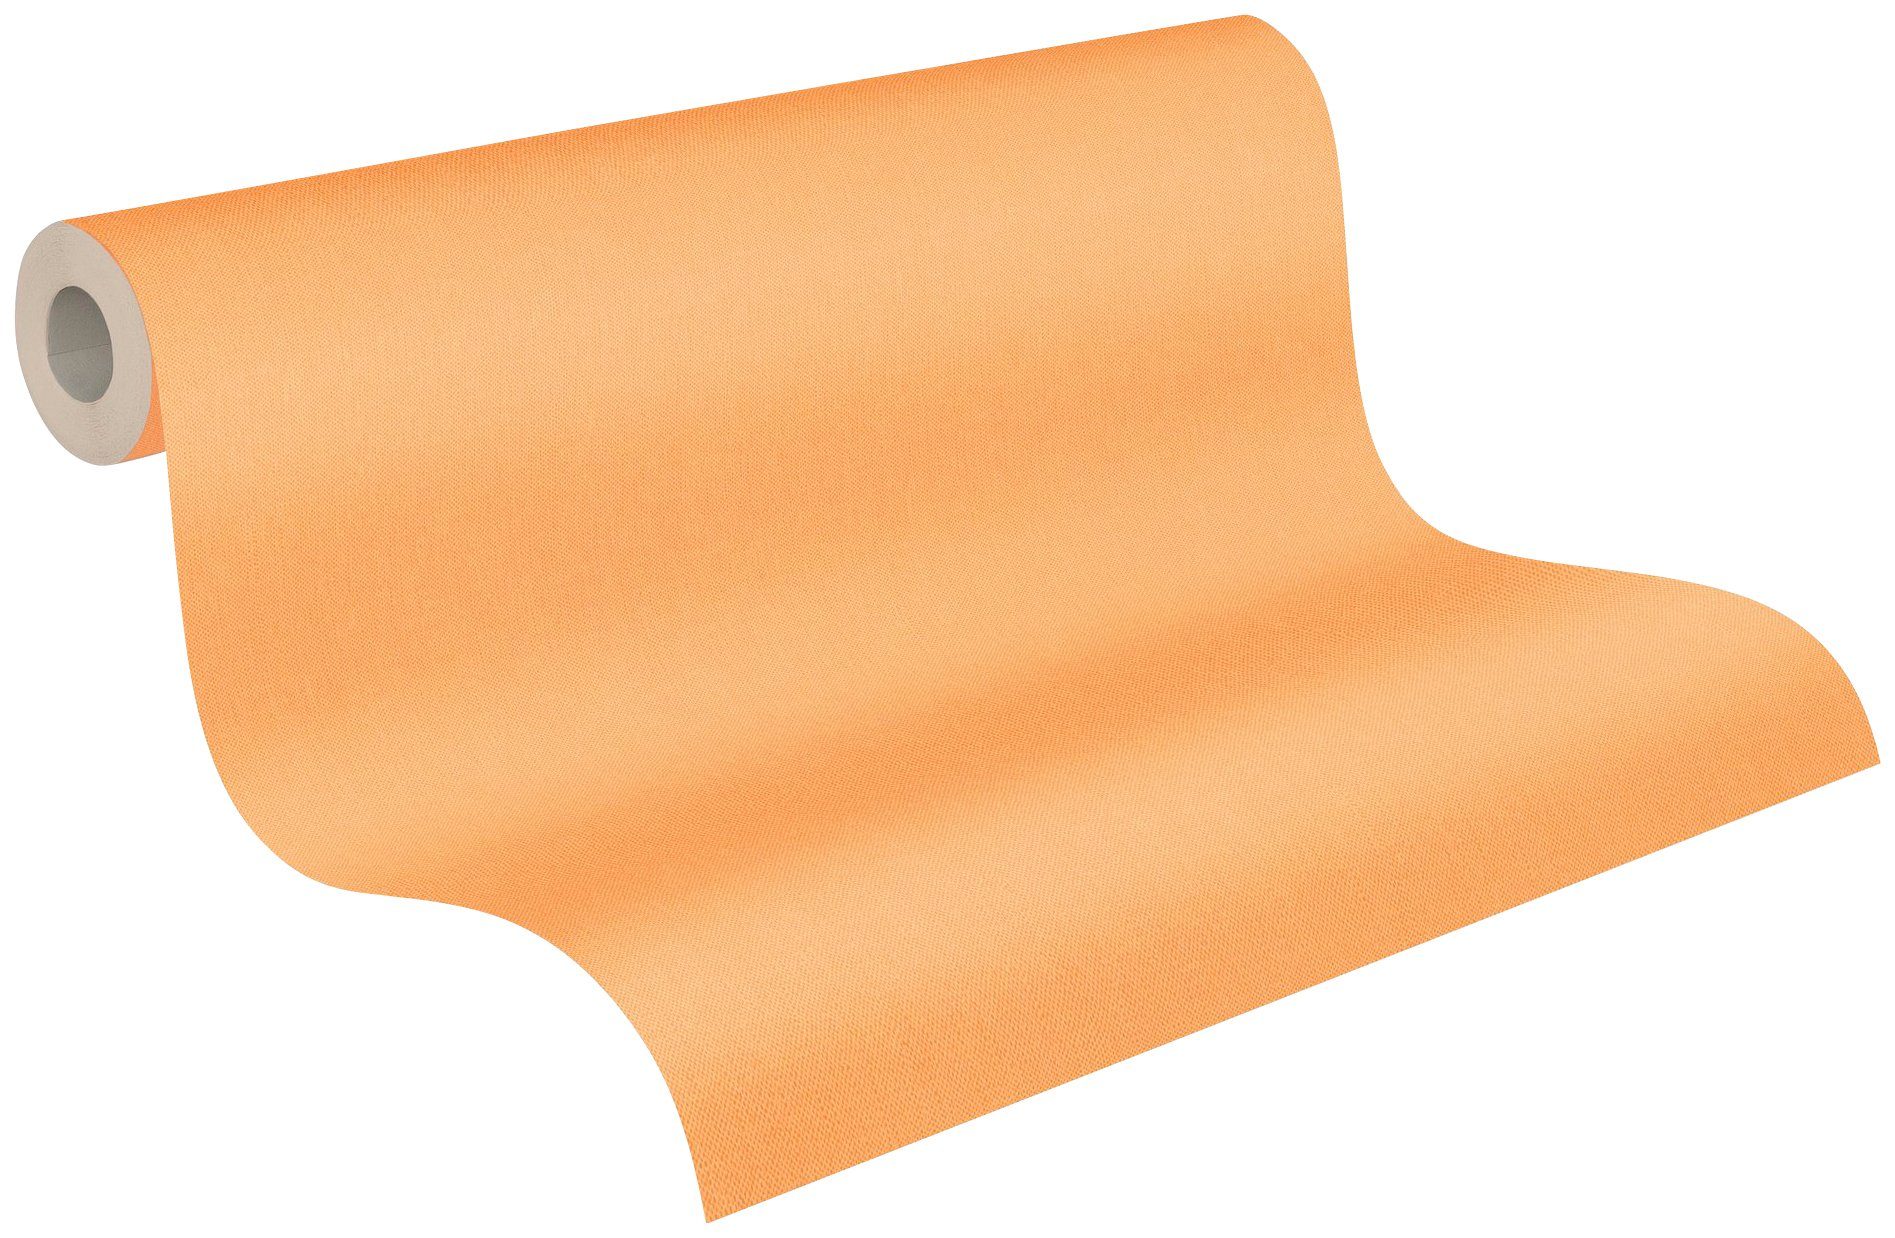 glatt, einfarbig, Paper Tapete Floral Architects unifarben, einfarbig Uni orange2 Impression, Vliestapete